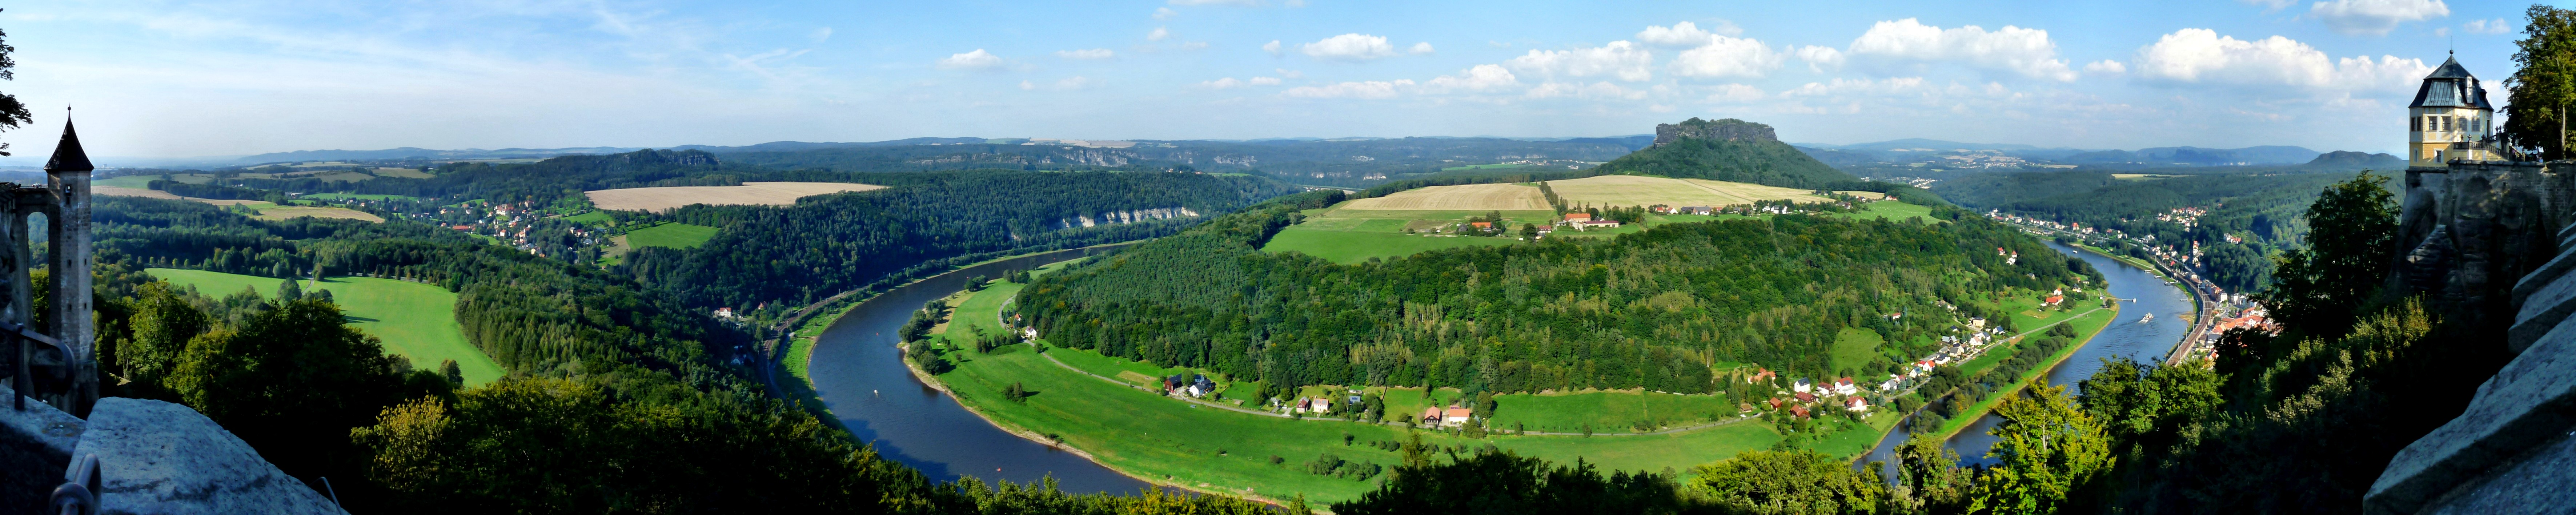 Panorama Königsteiner Elbschleife_5zu1